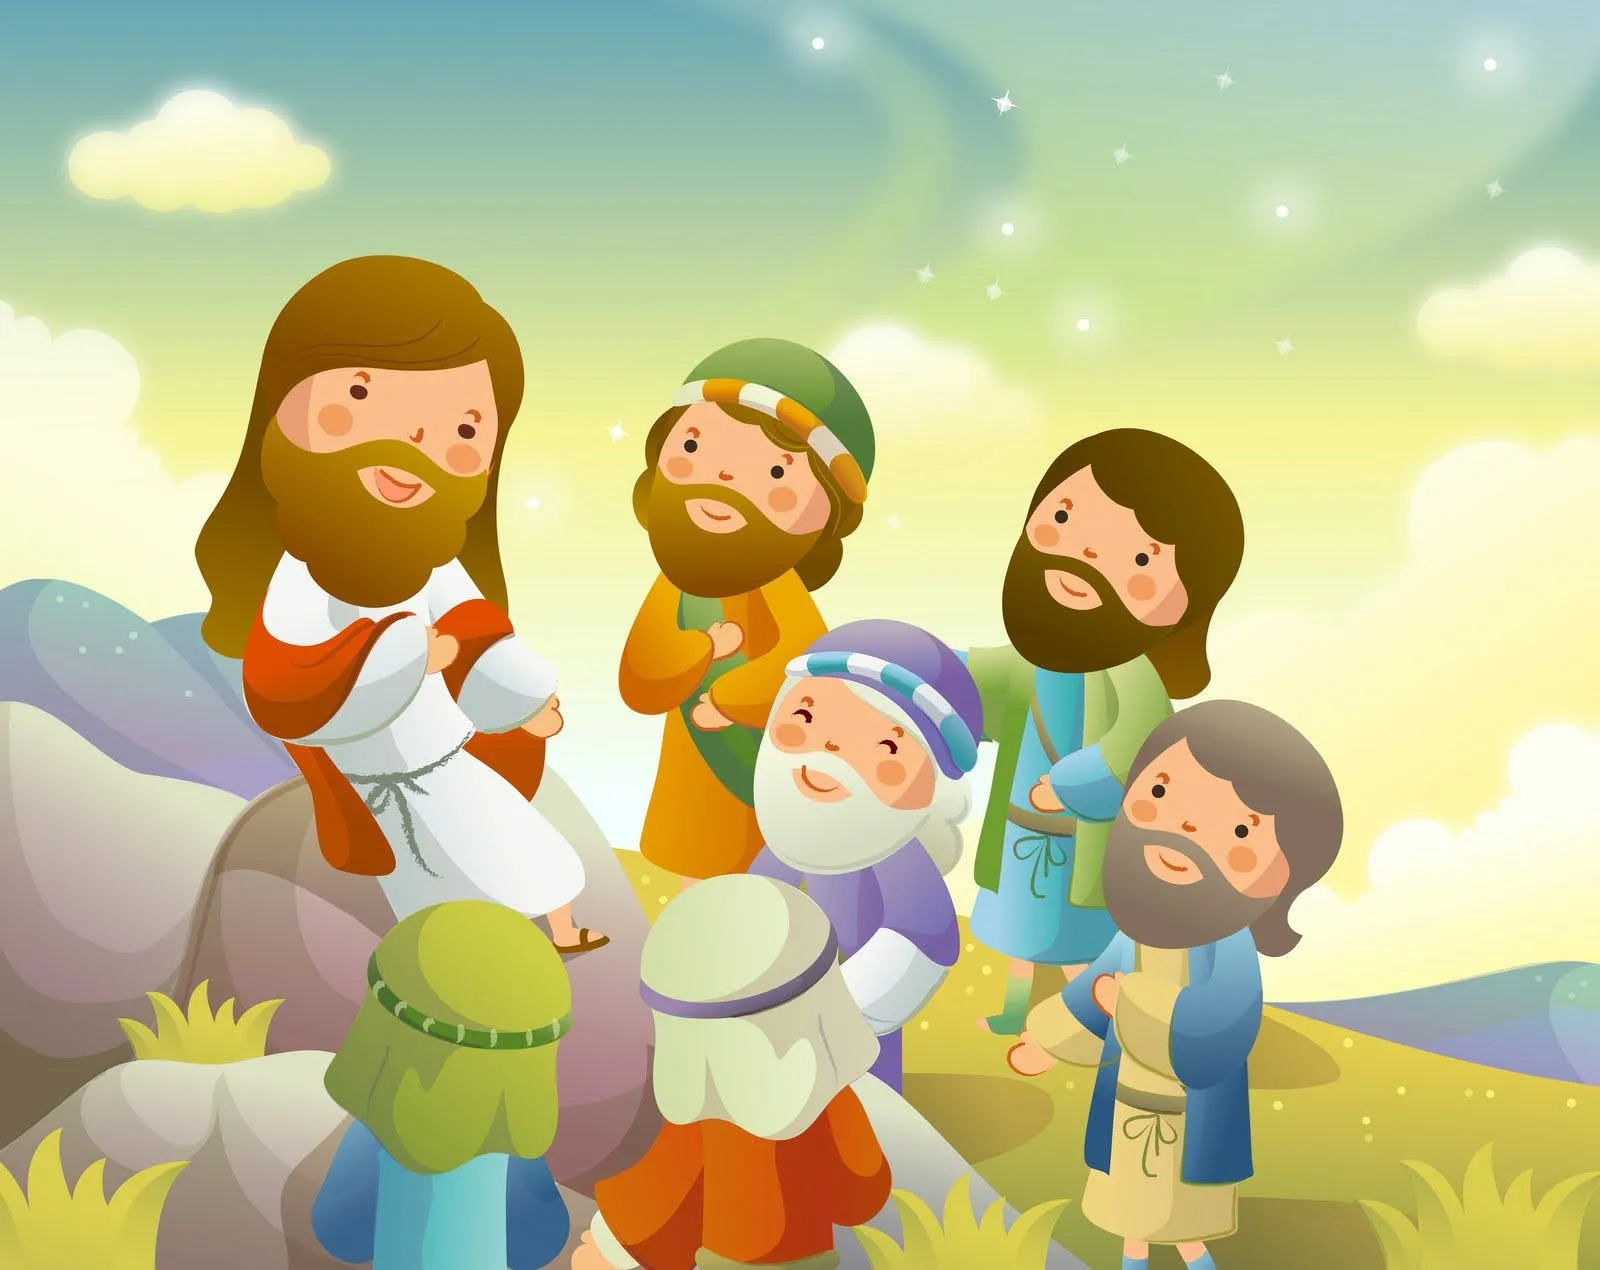 caricaturas biblia para ninos - Imageneitor